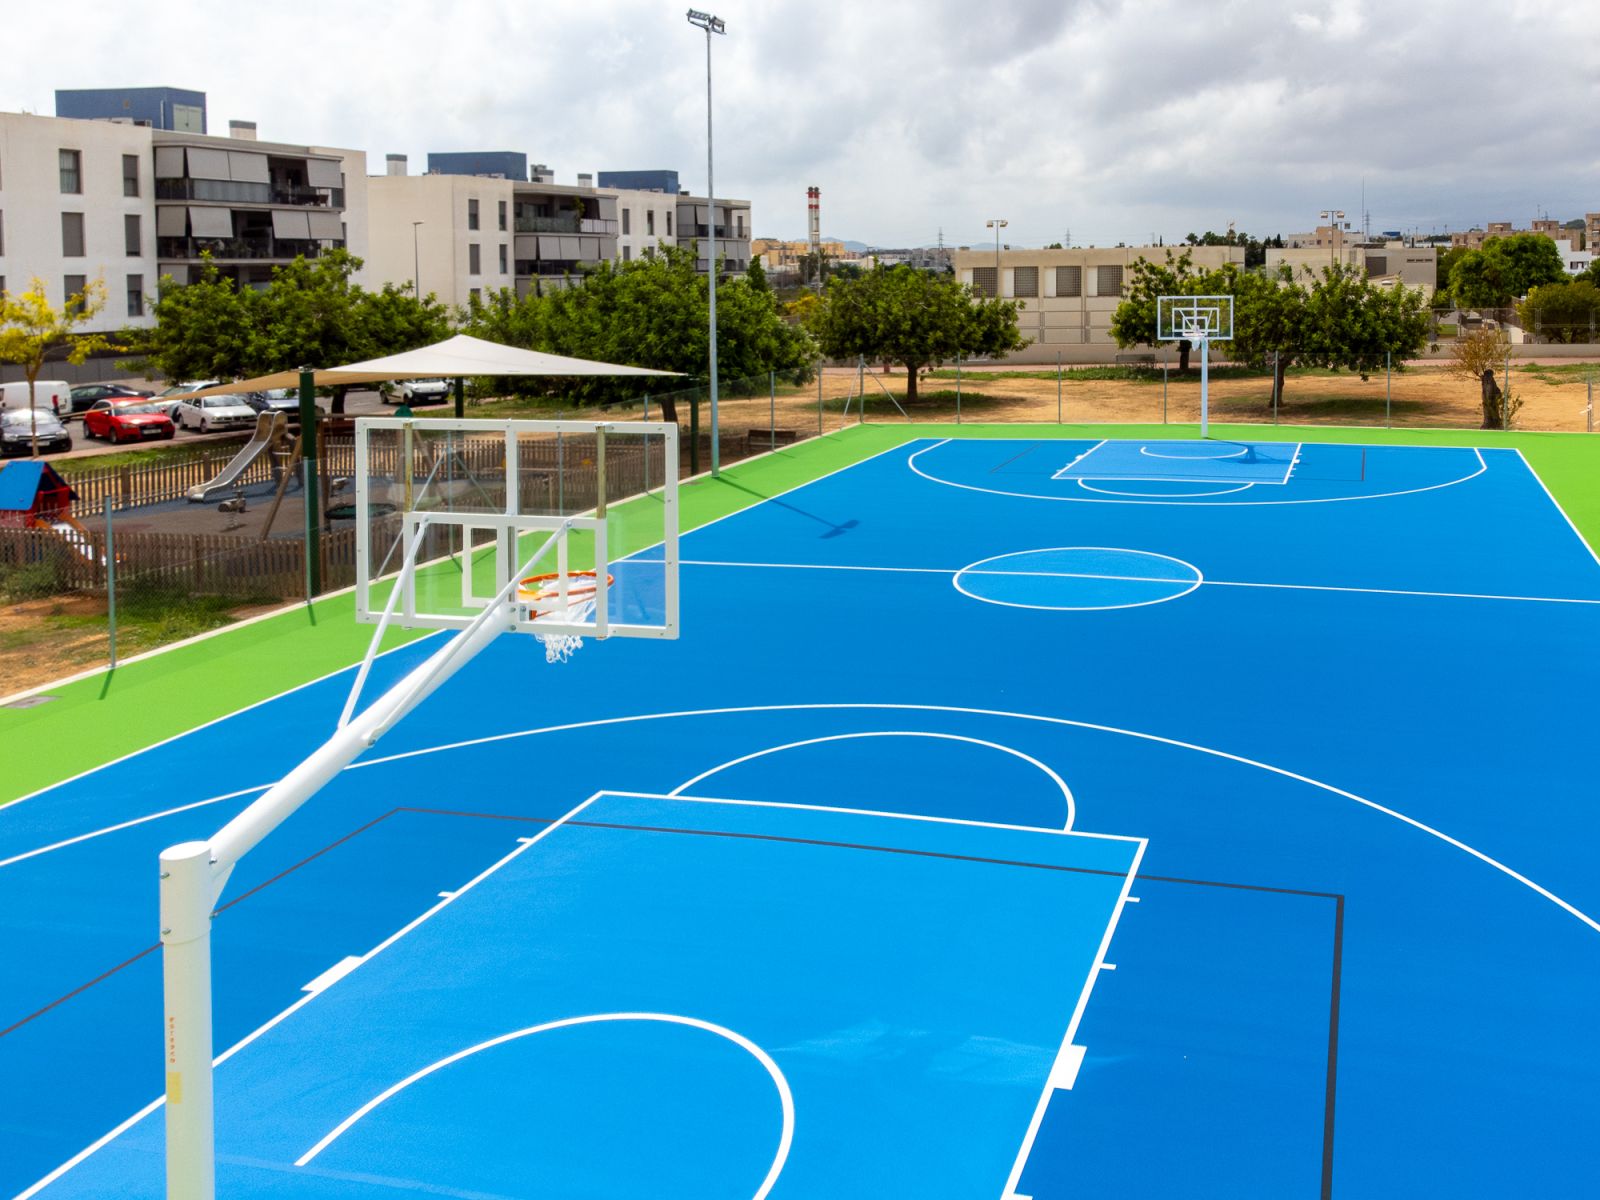 Estrenada la nova pista de bàsquet de s’Olivera que oferirà més espai per a l'esport al col·legi i al club esportiu